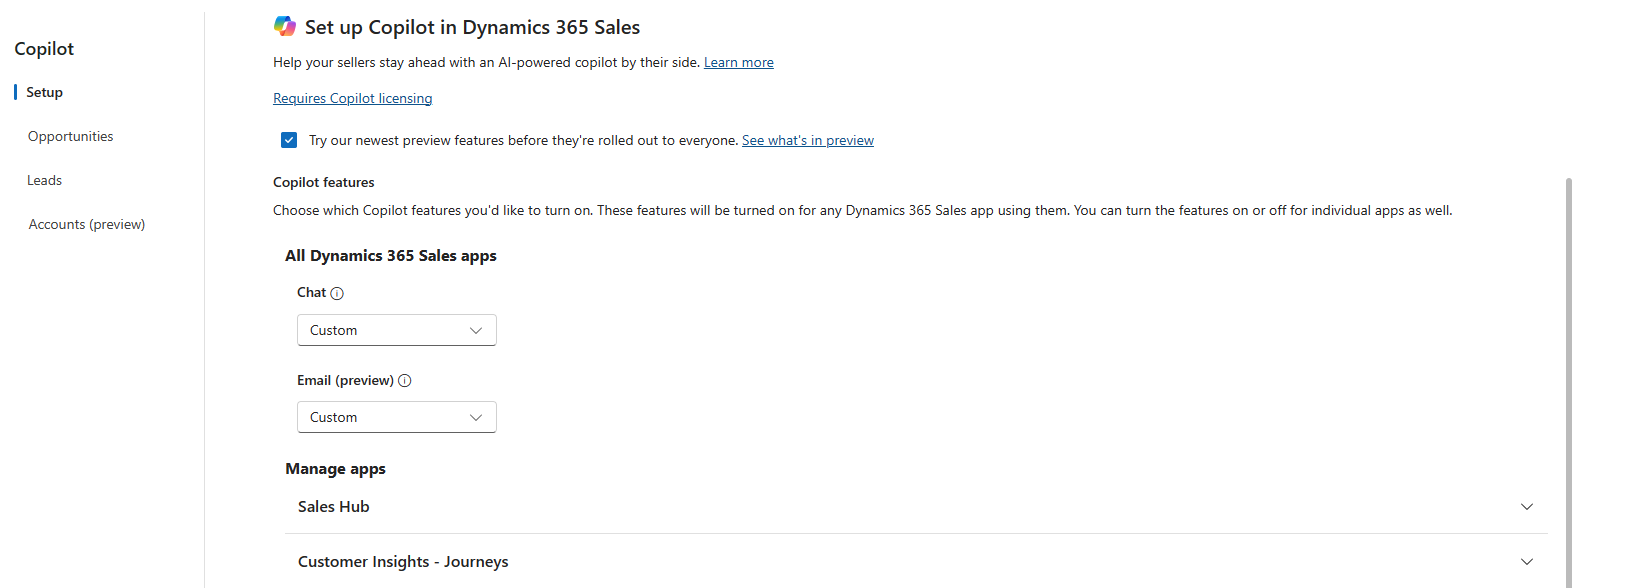 צילום מסך של דף ההגדרות החדש במרכז המכירות של Dynamics 365 Sales.